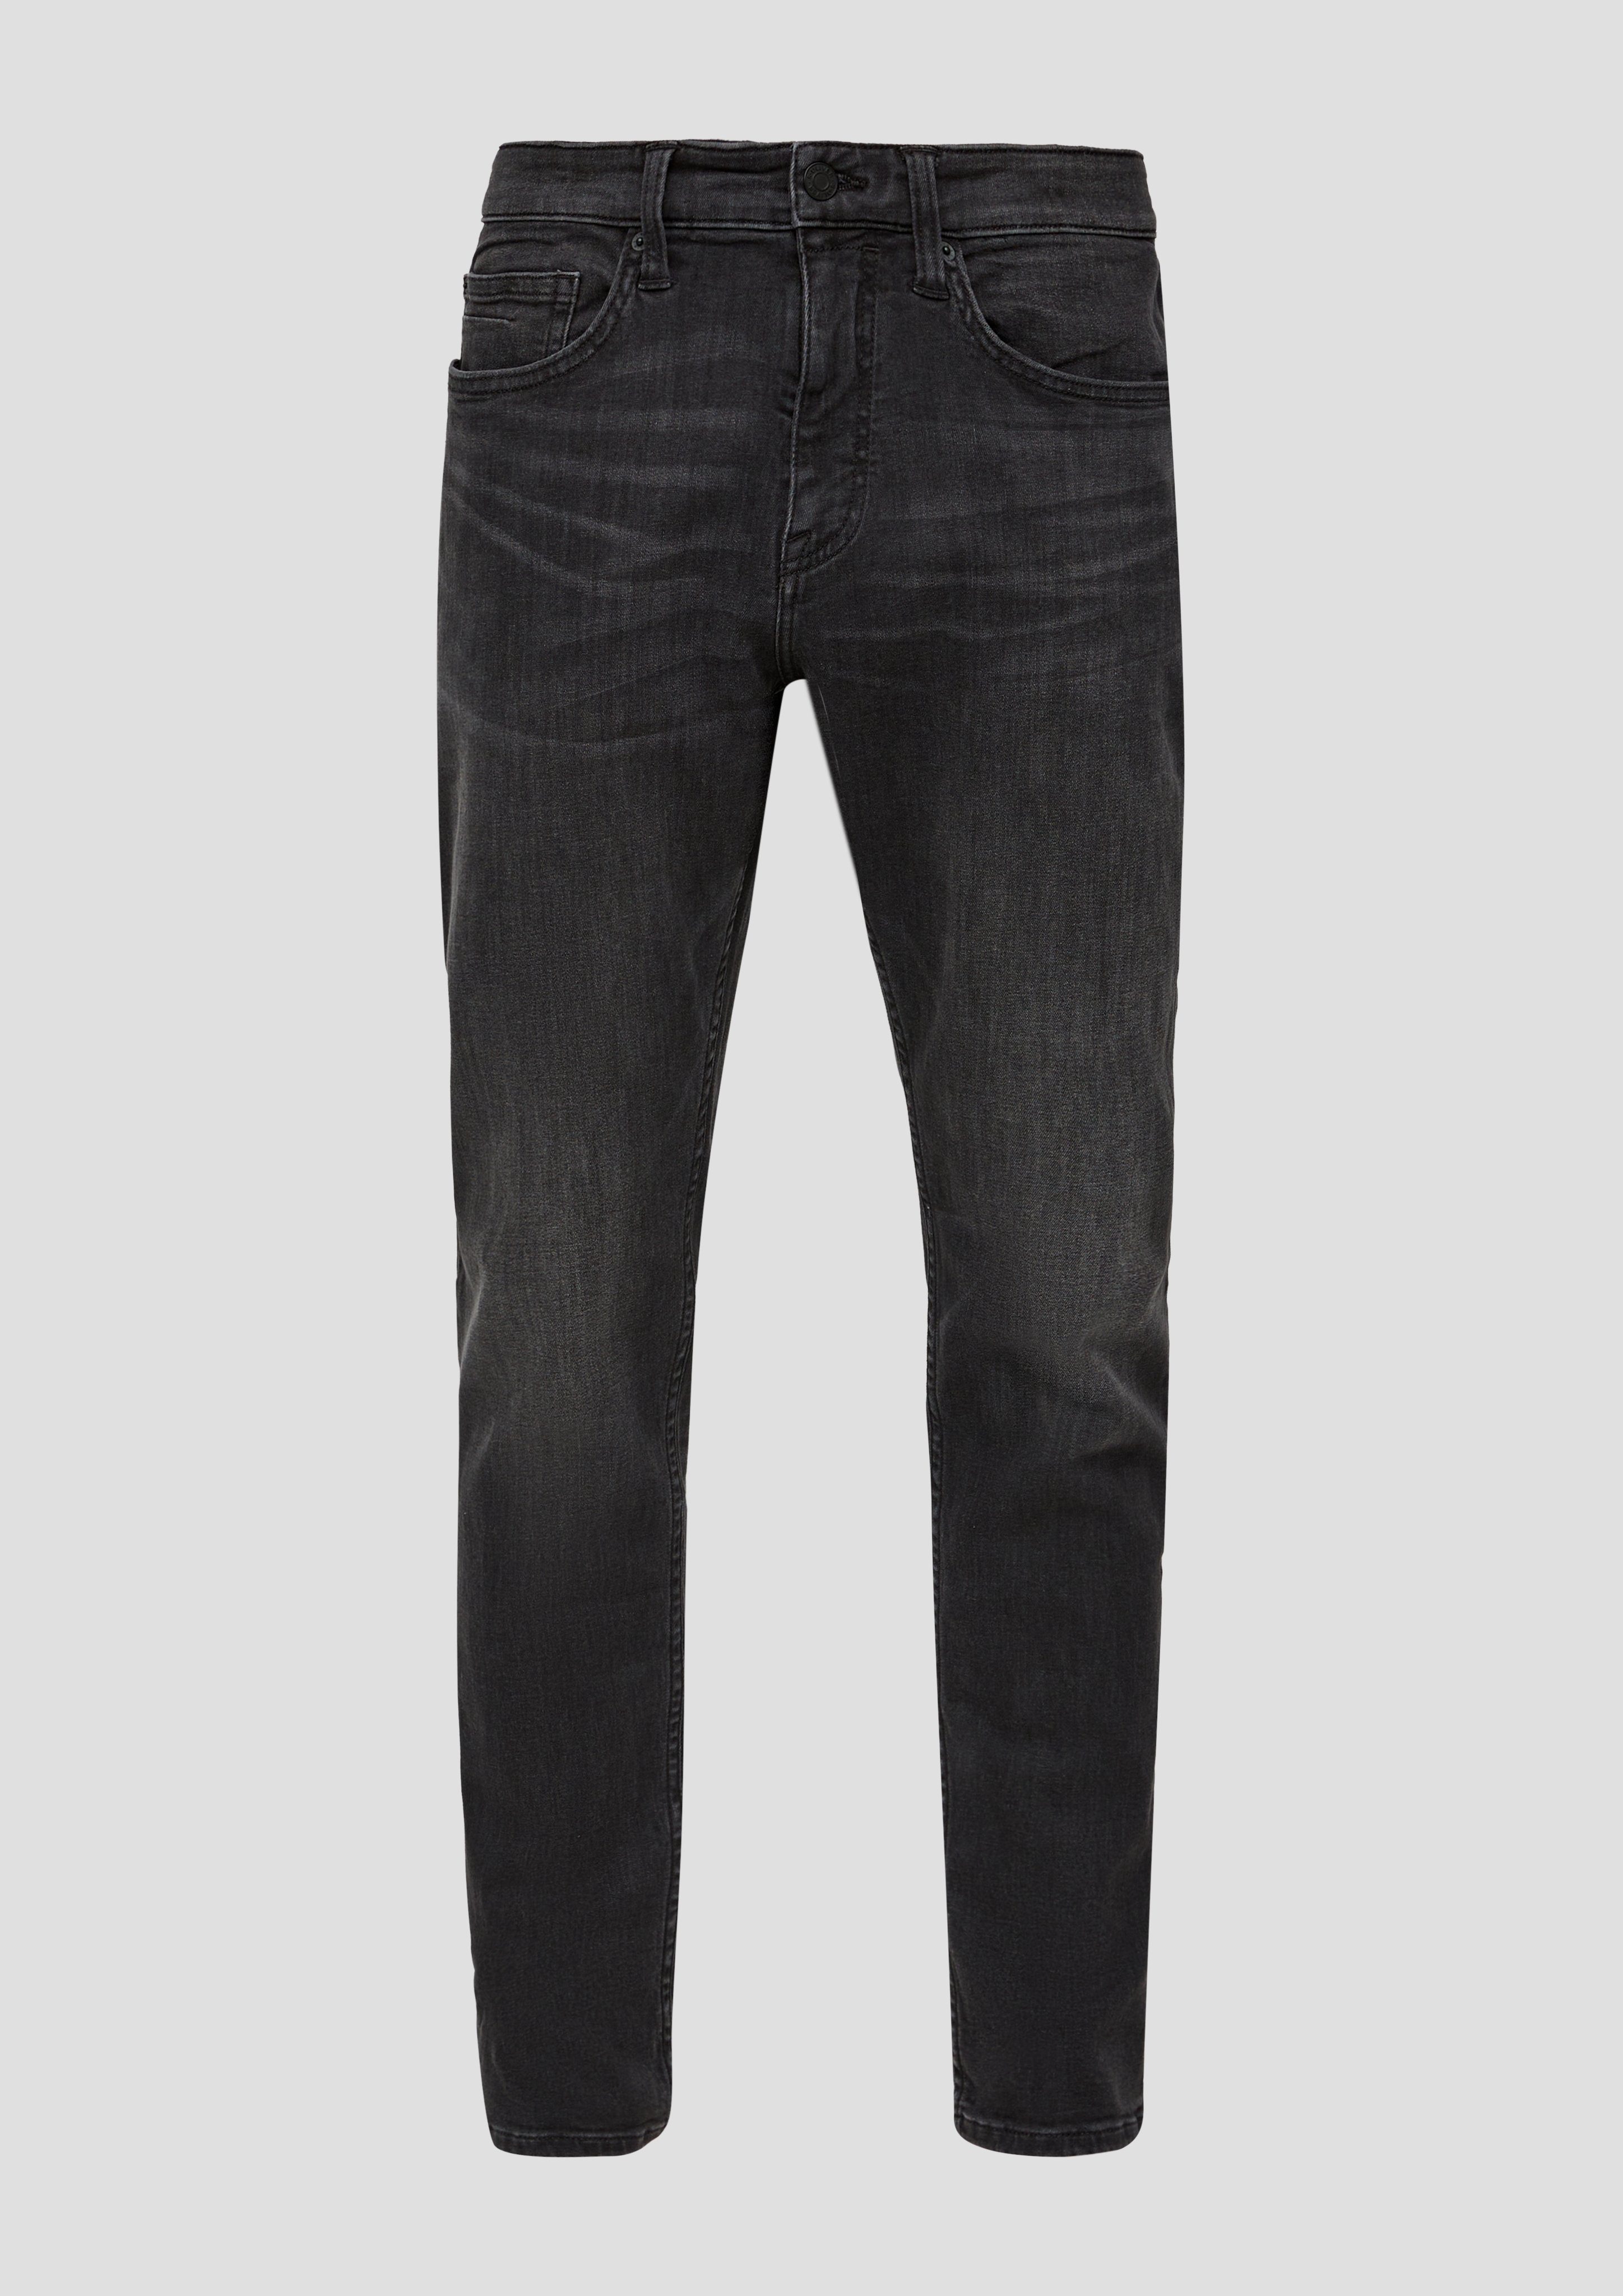 Jeans grey/black34 Beinverlauf Bequeme mit s.Oliver geradem